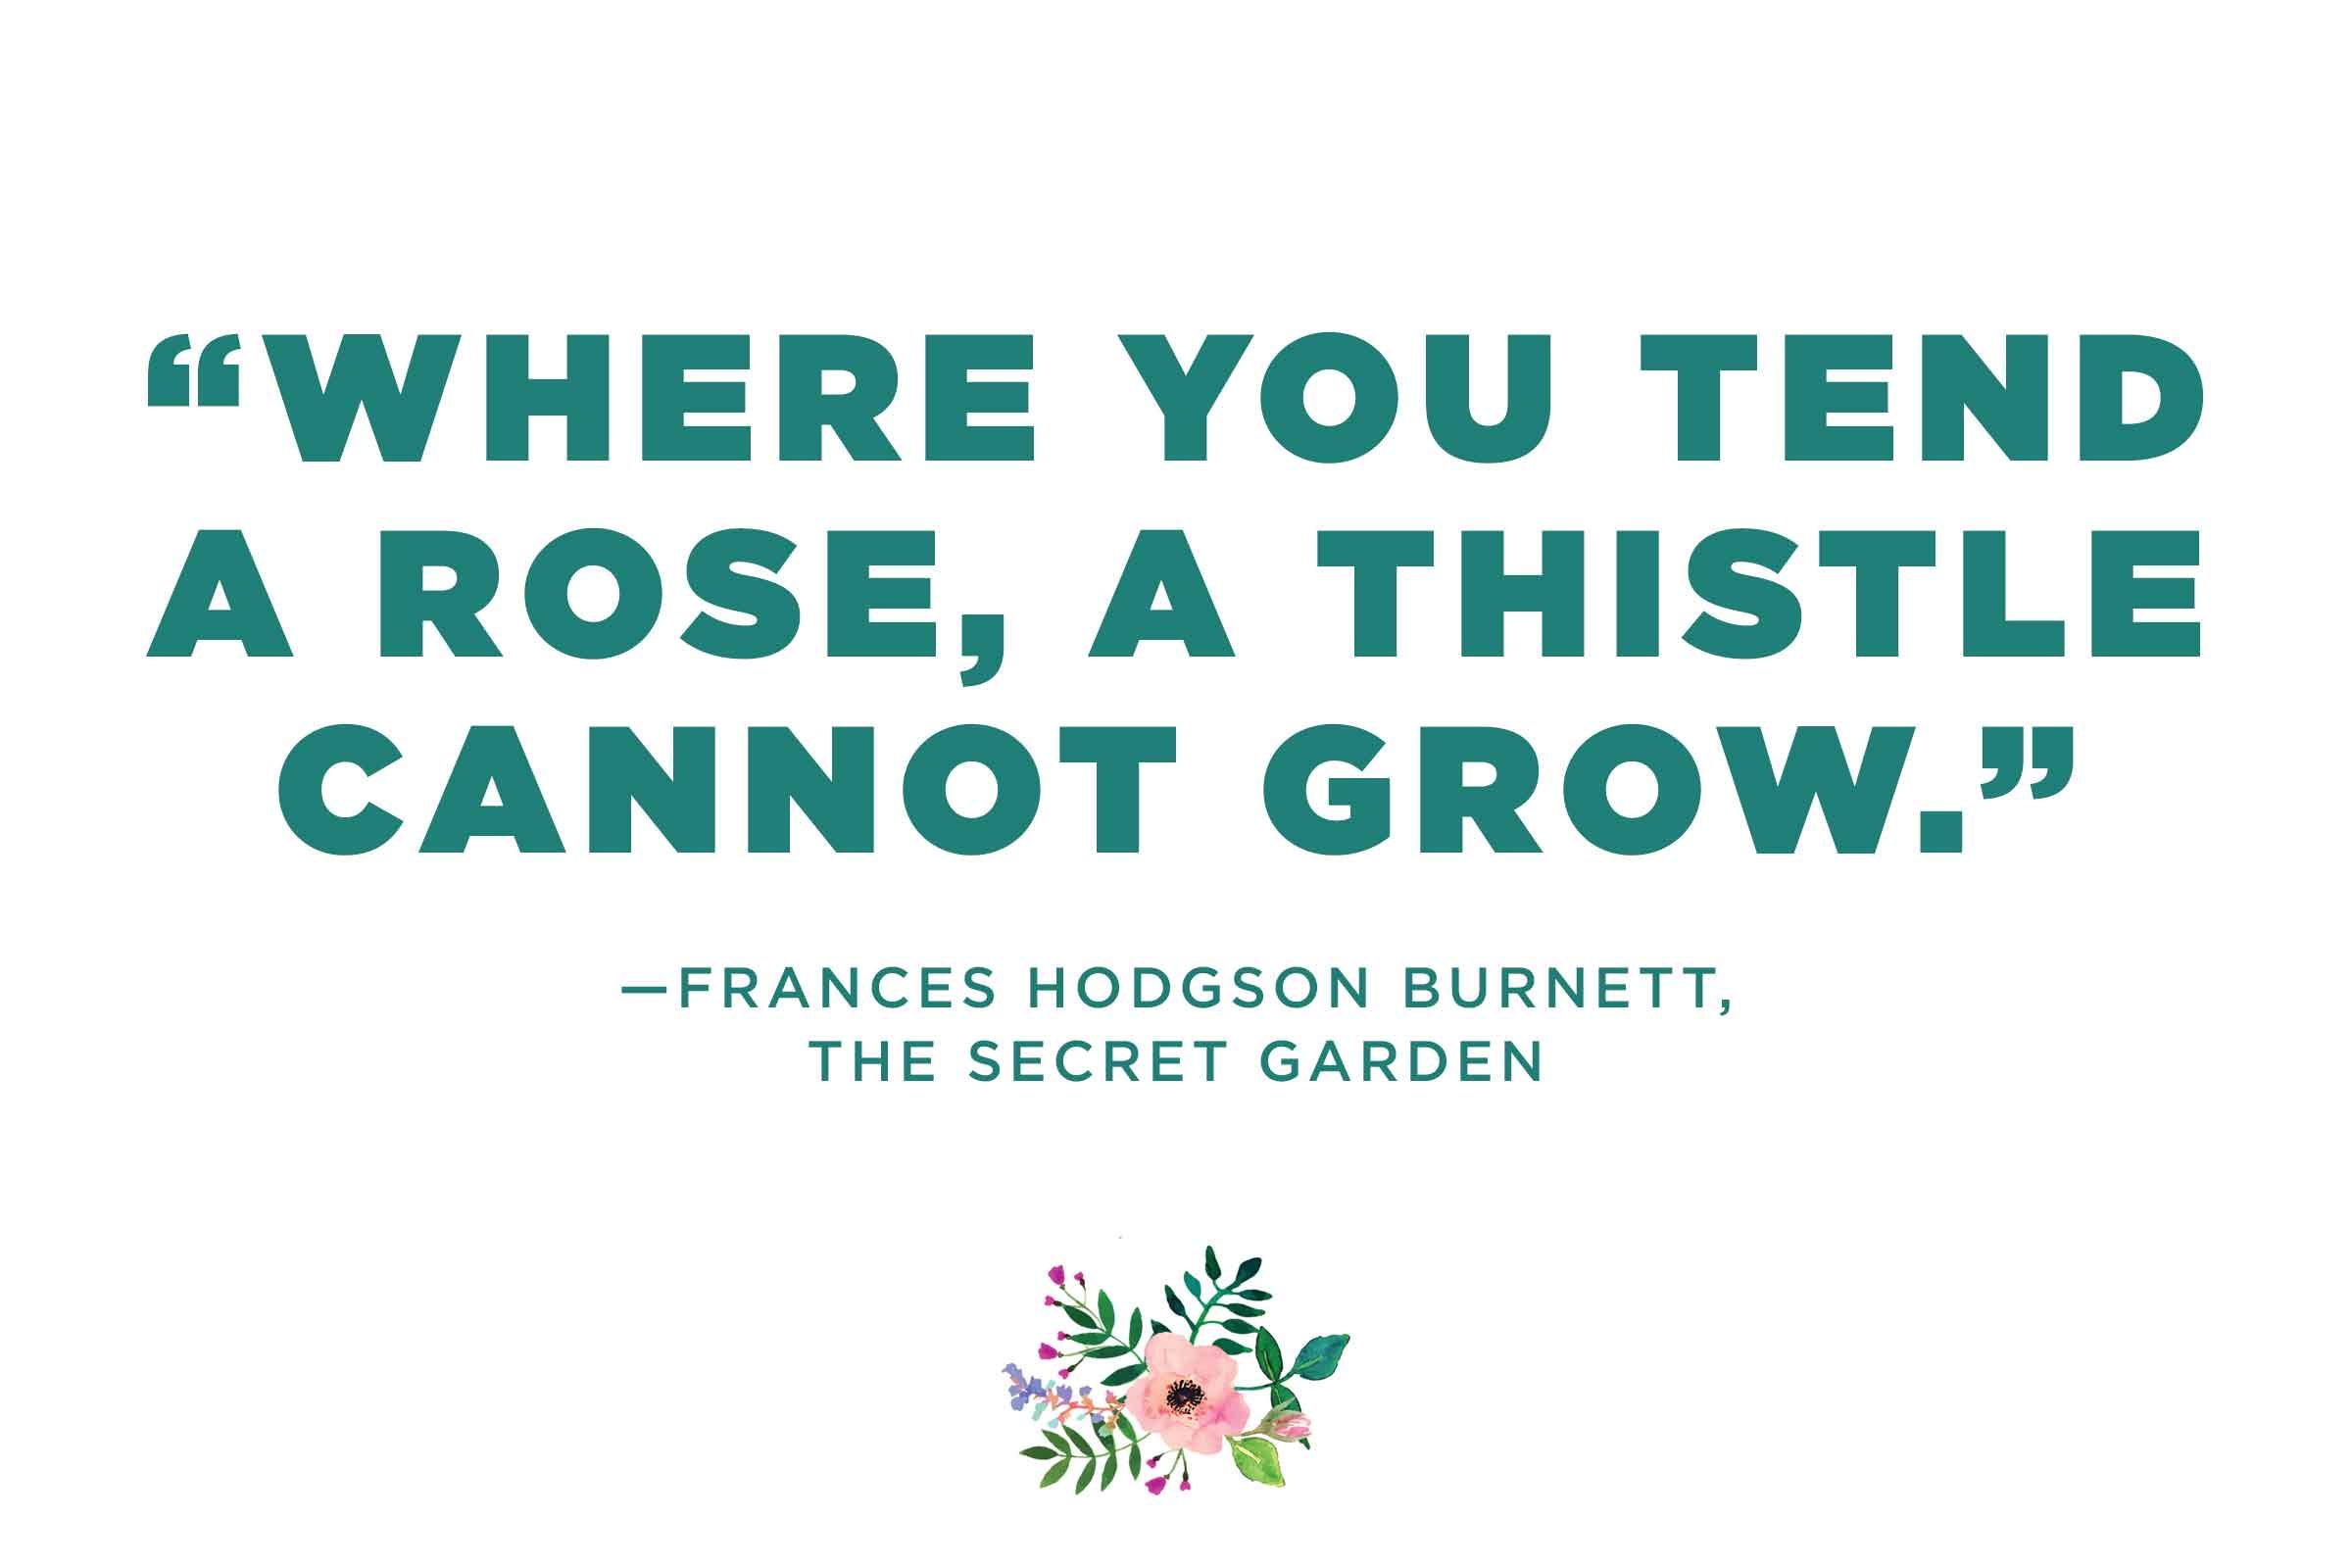 Frances Hodgson Burnett on cultivating your garden